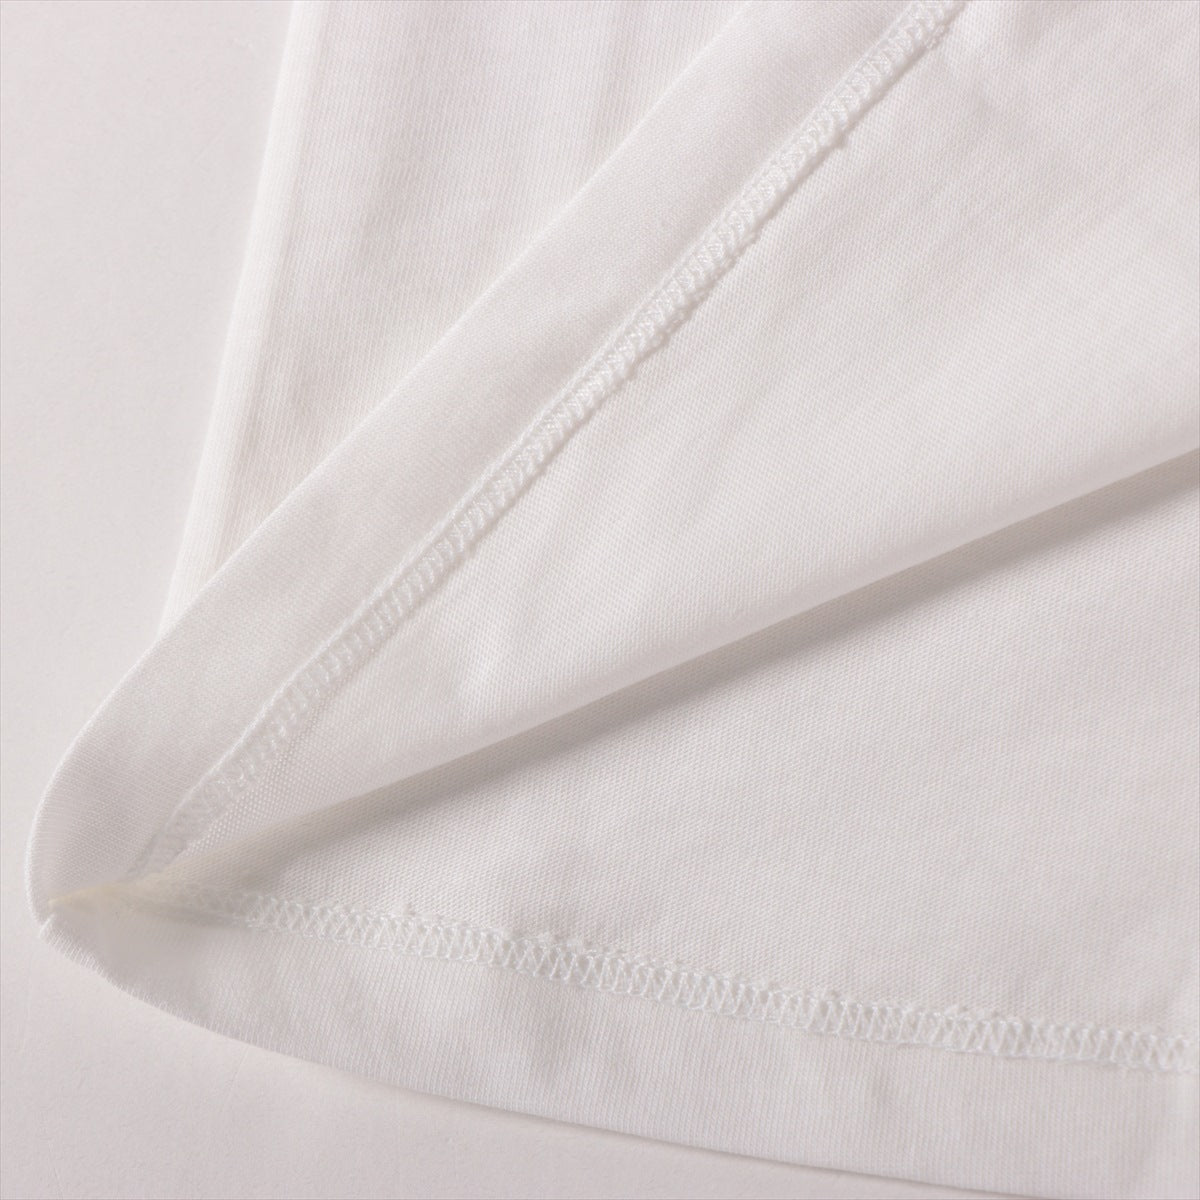 ヴァレンティノ VLTNロゴ コットン Tシャツ XS メンズ ホワイト  SB3MG07D3V6